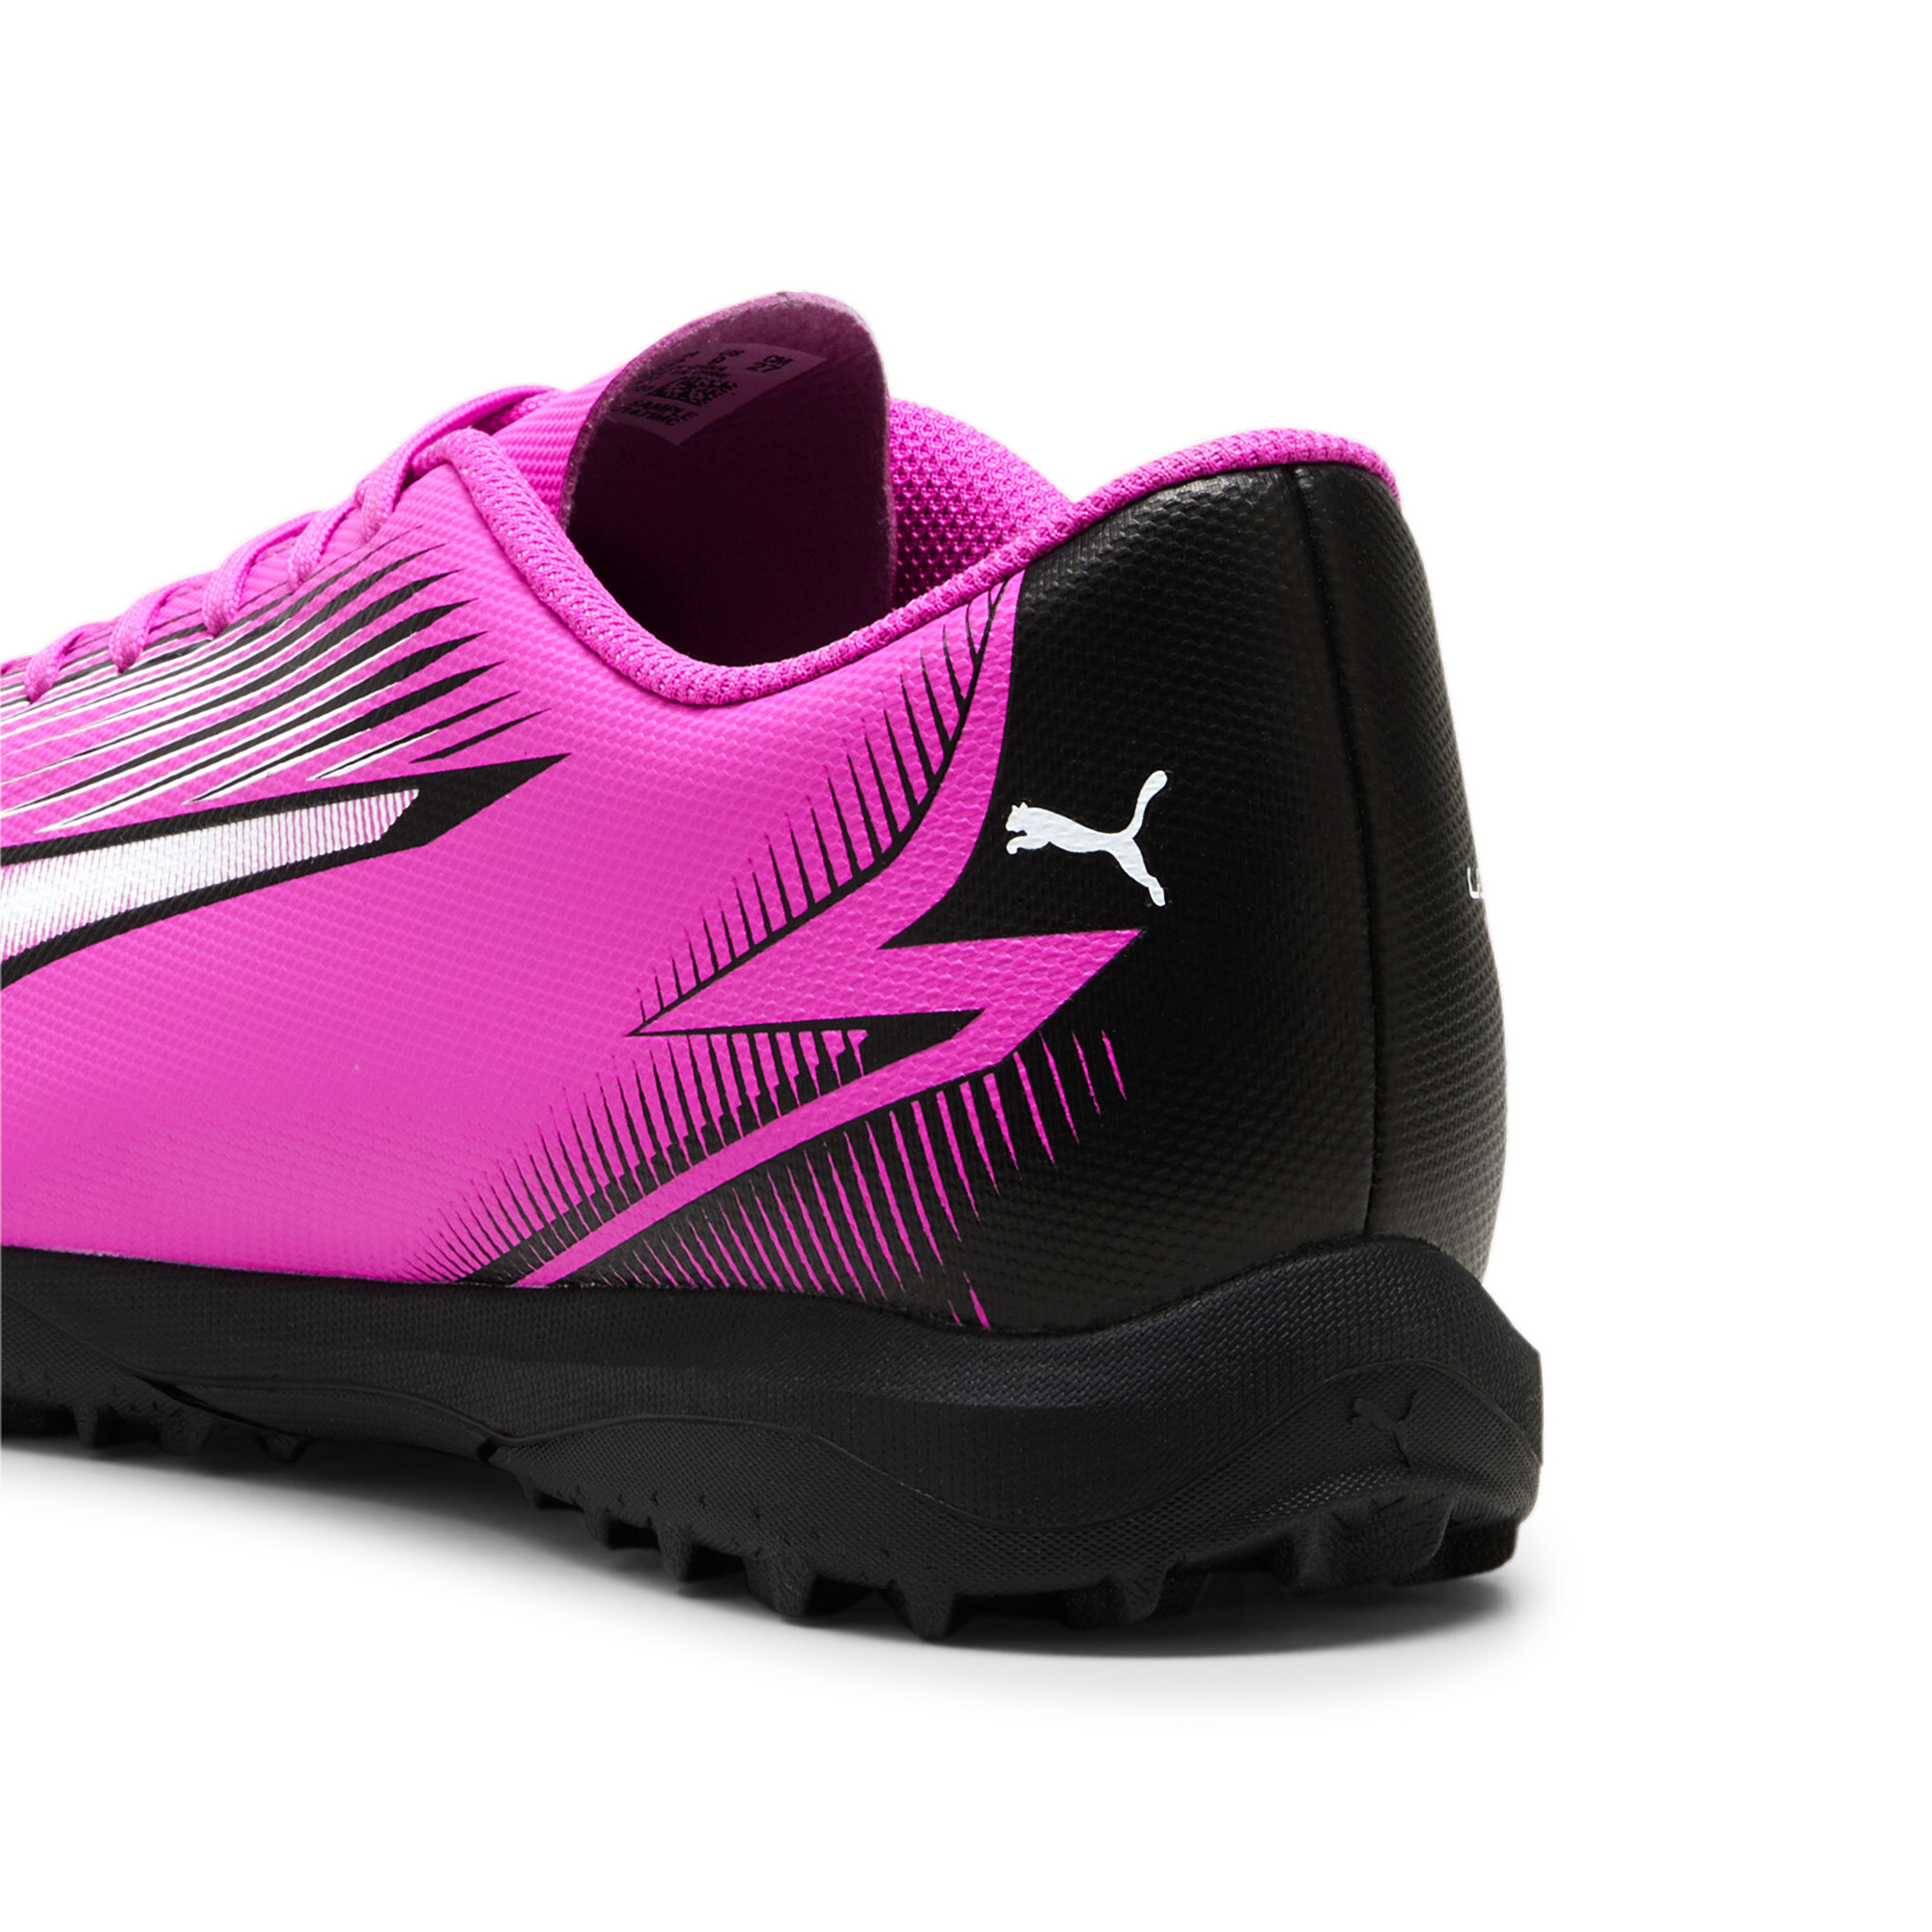 Men's PUMA ULTRA PLAY TT Football Boots In Pink, Size EU 45